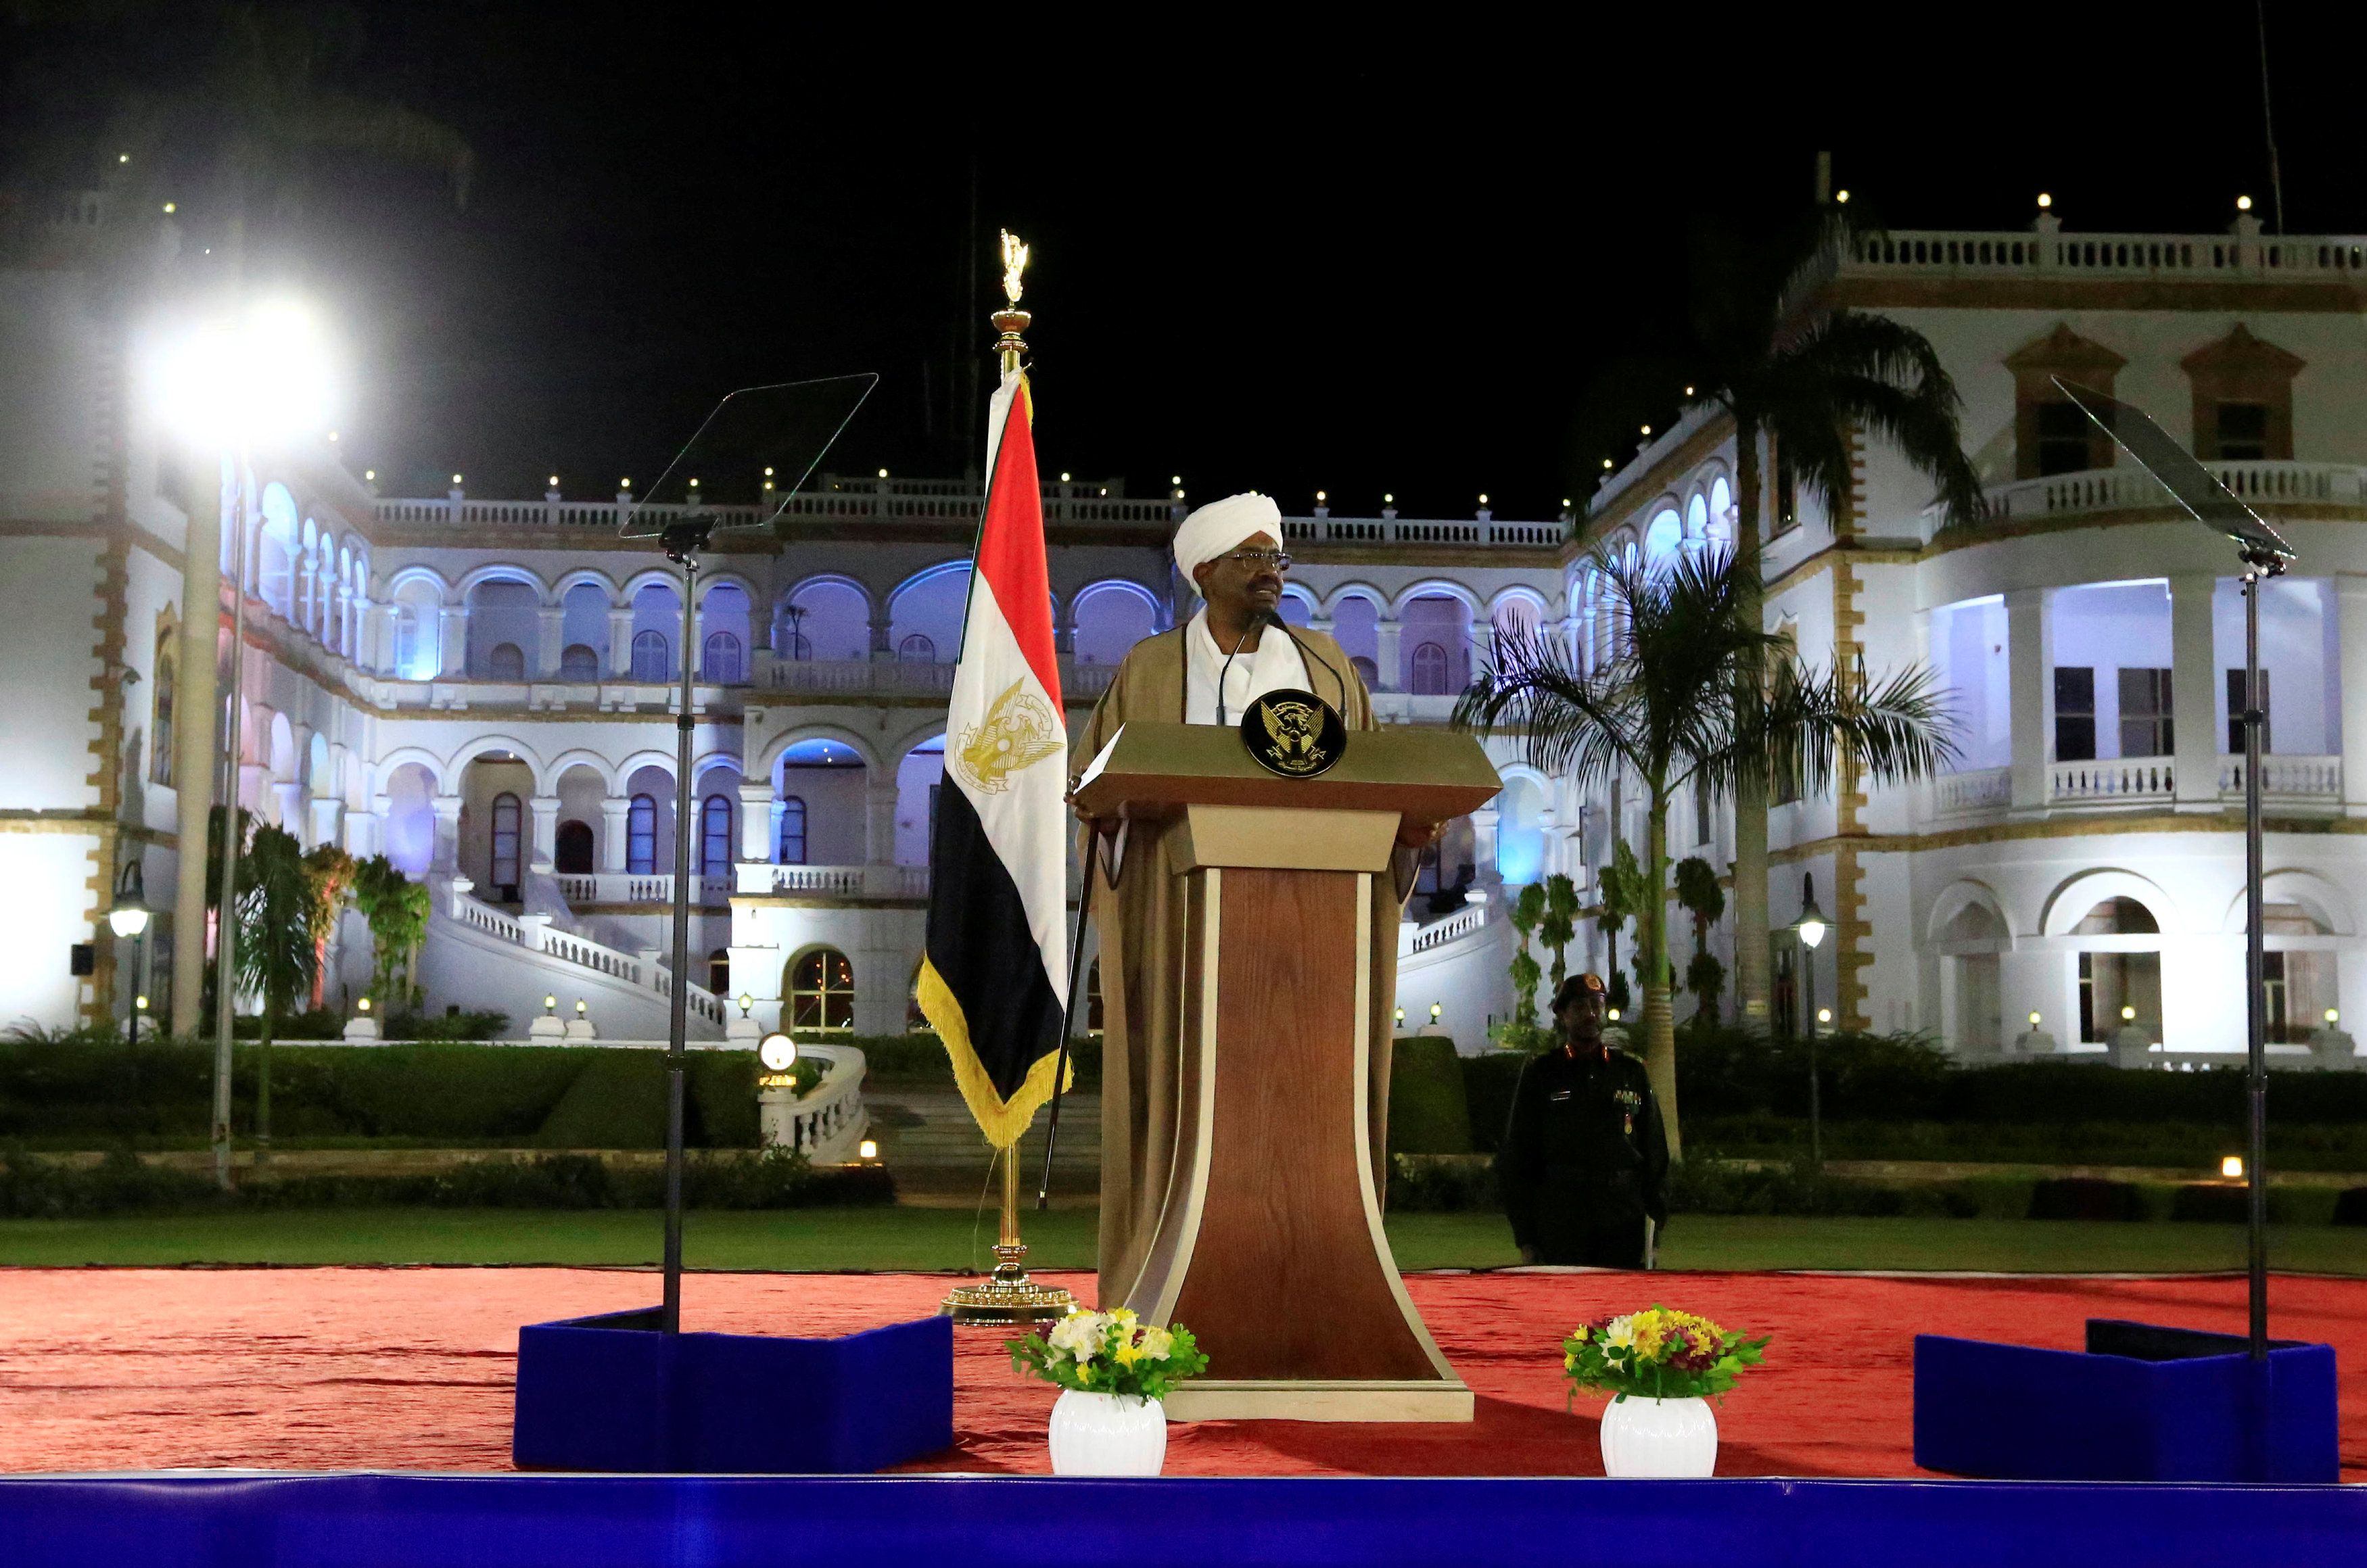 الرئيس السودانى عمر البشير خلال خطاب له بالخرطوم (2)